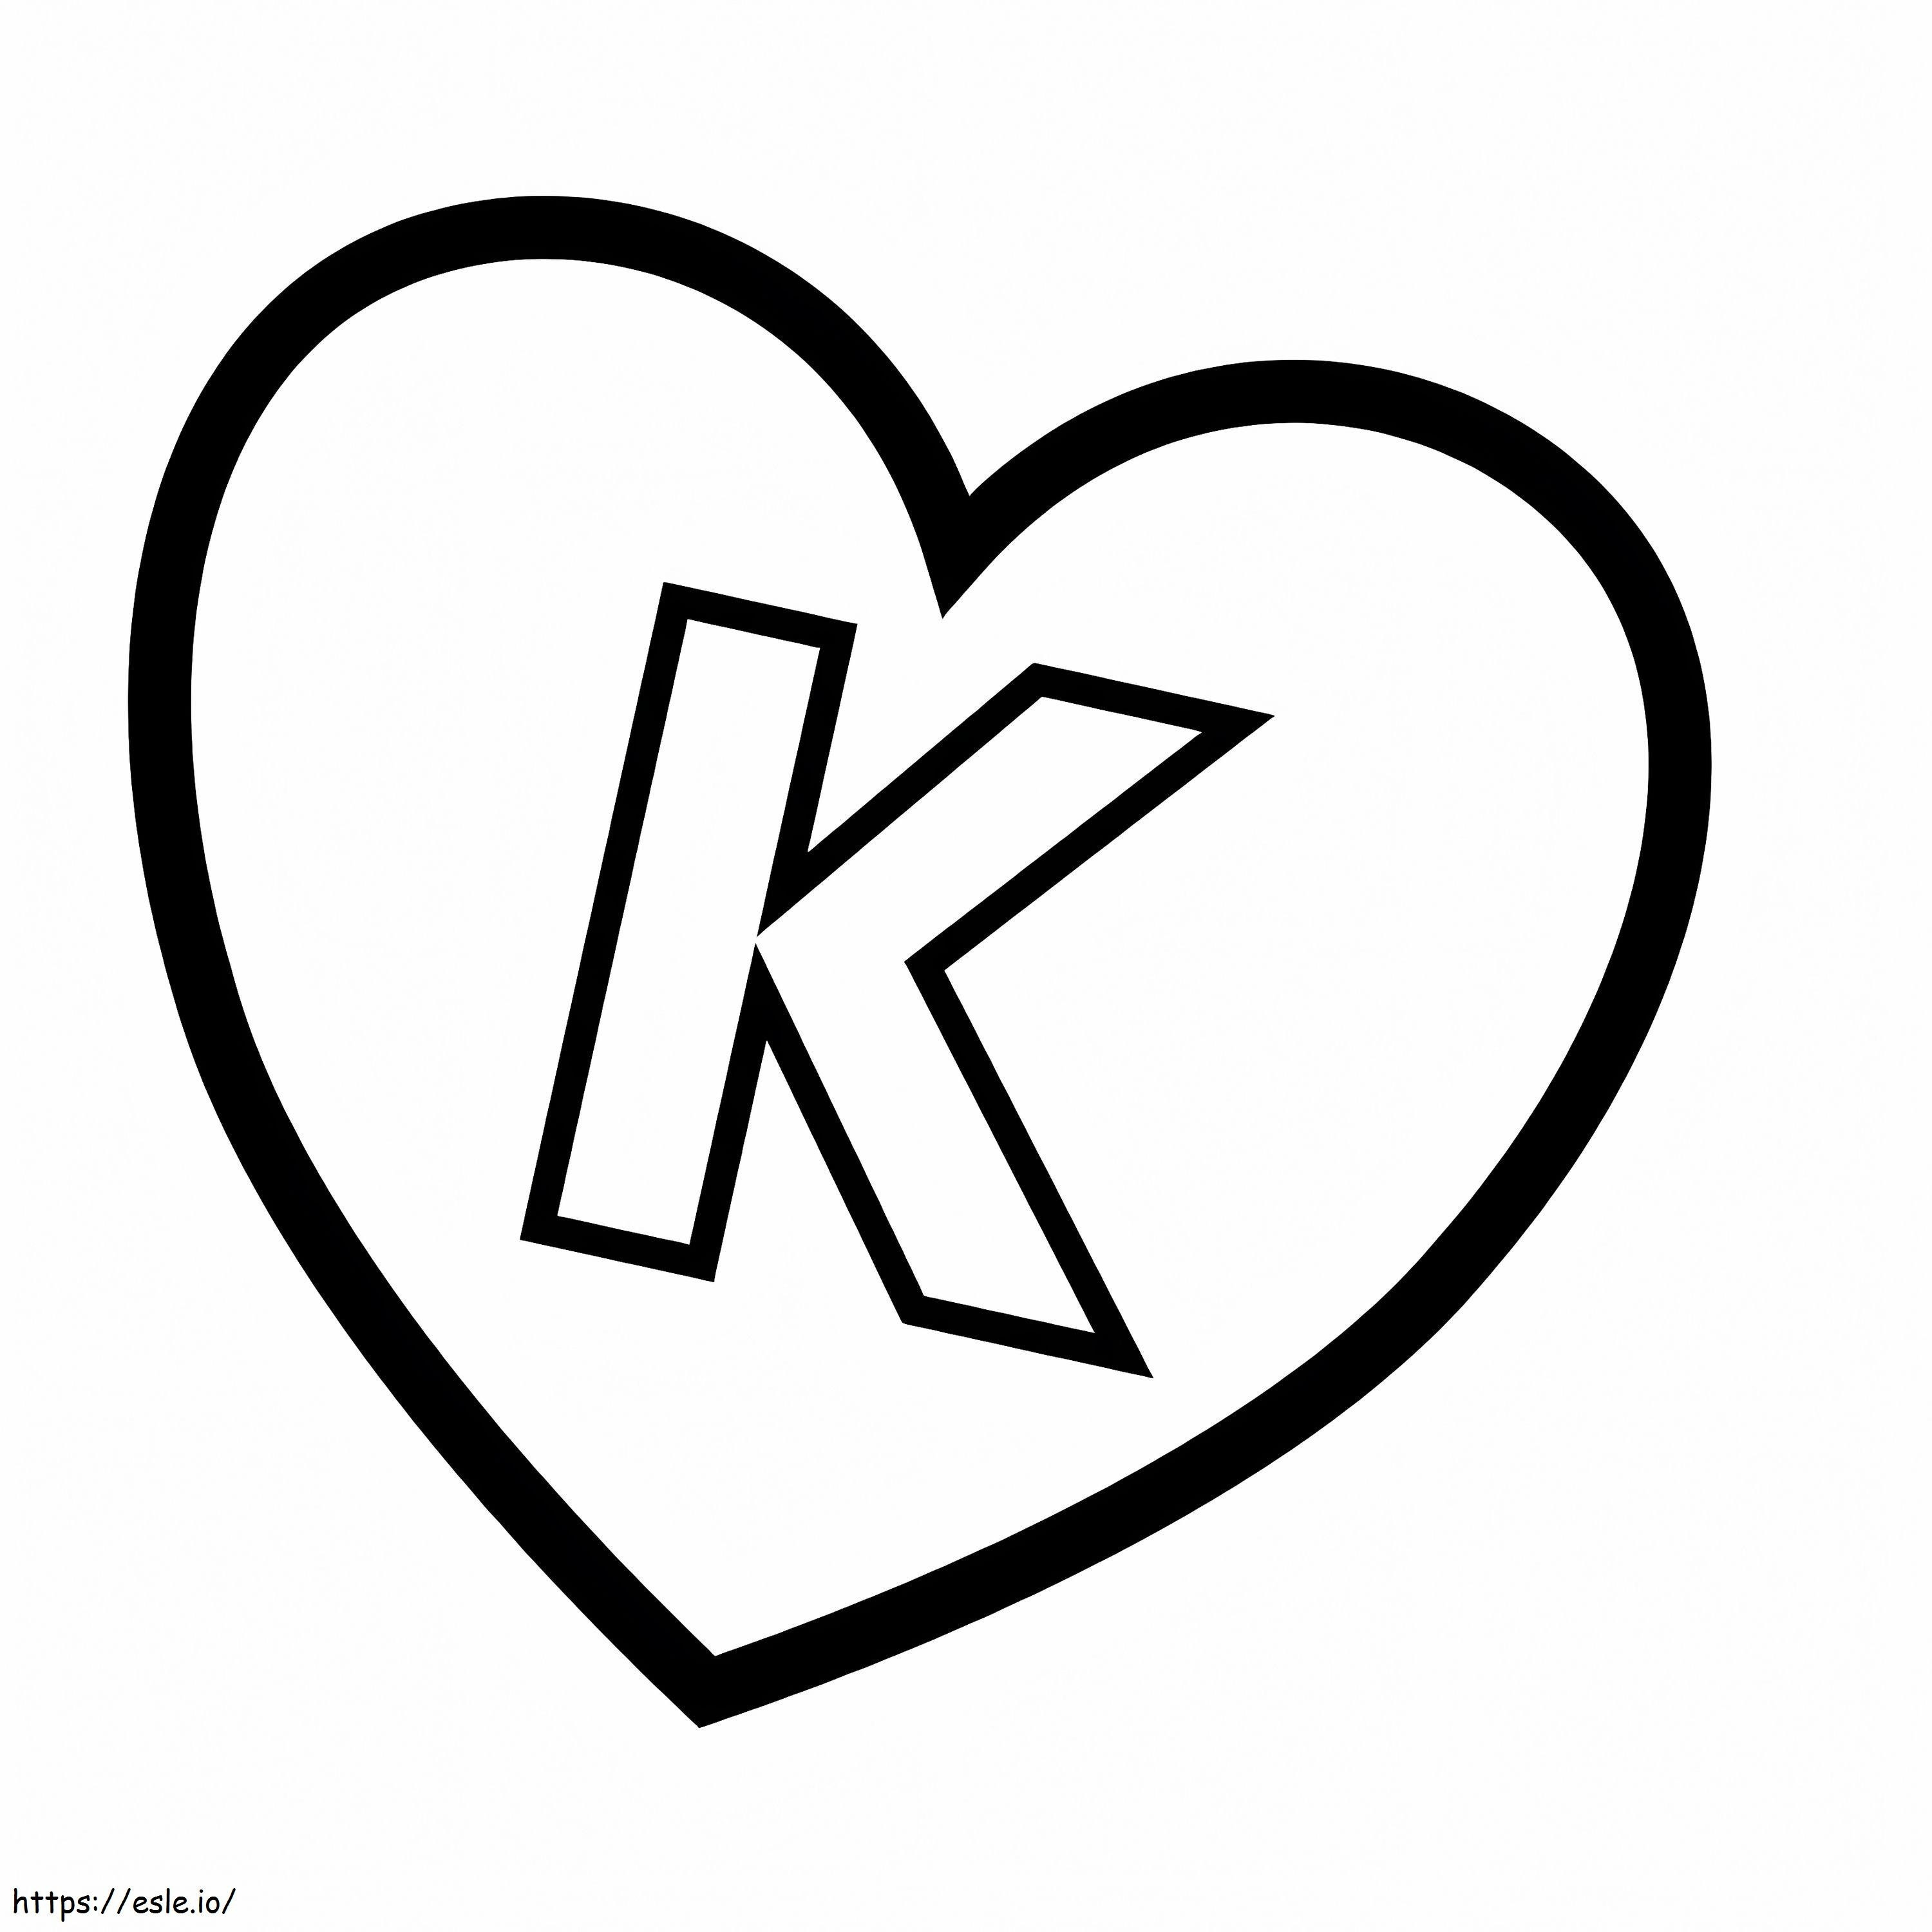 Litera K în inimă de colorat